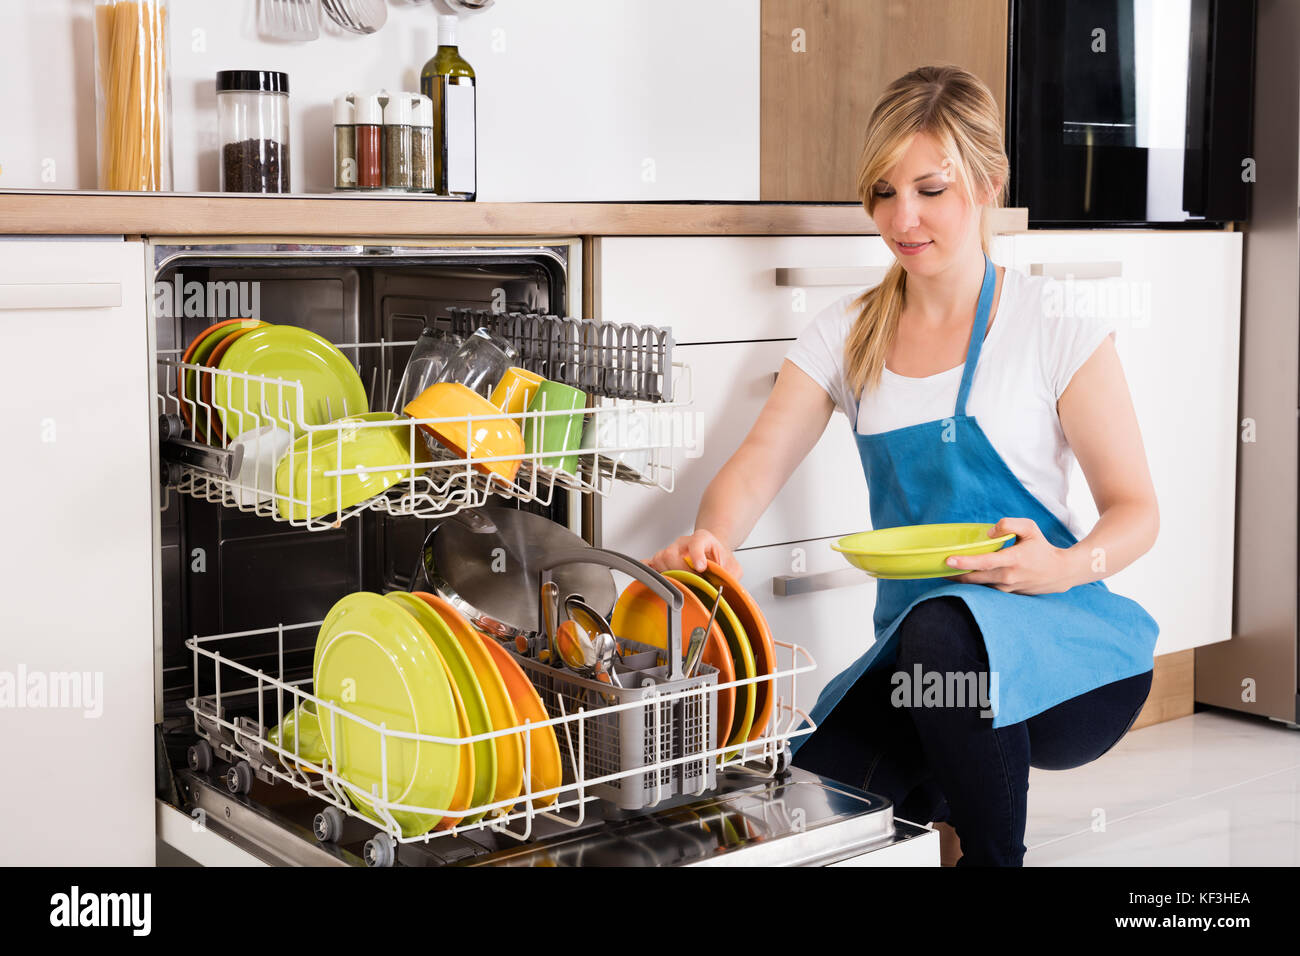 Jeune femme organiser les plaques dans un lave-vaisselle à la maison Banque D'Images